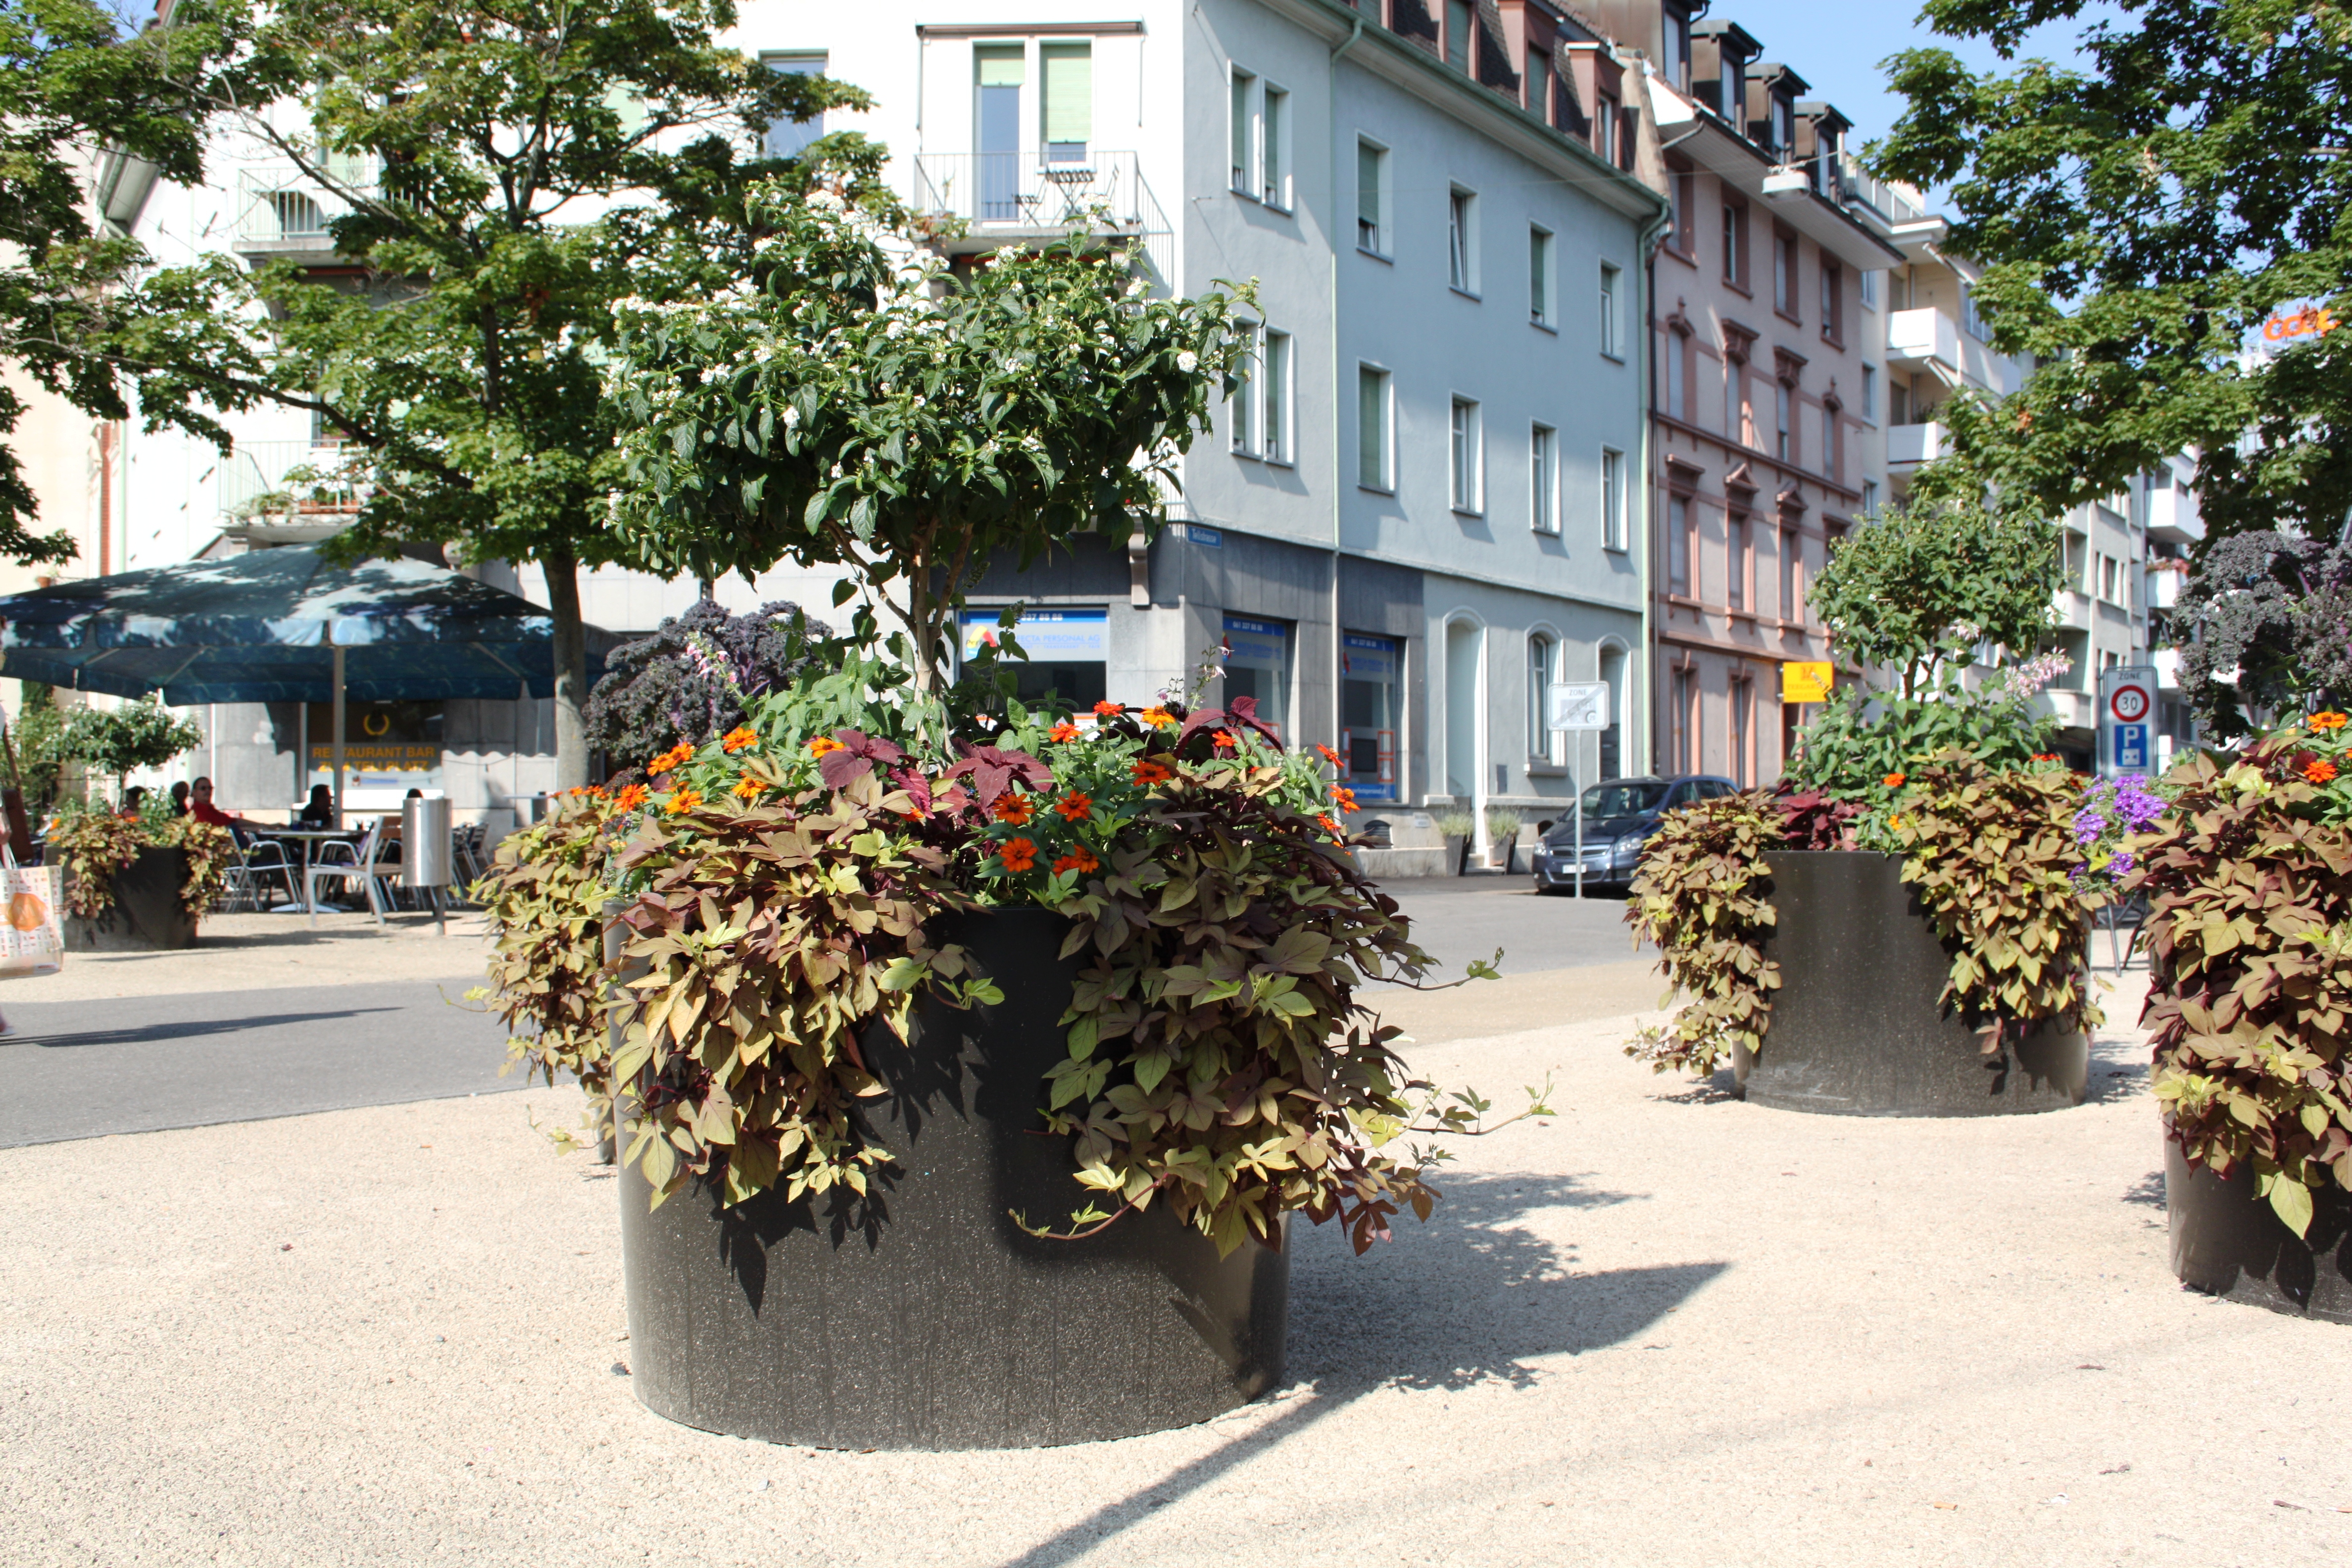 Wechselbepflanzt, optisch ansprechend und mobil: die Blumenkübel auf dem Tellplatz. Echte Gundelianer eben.